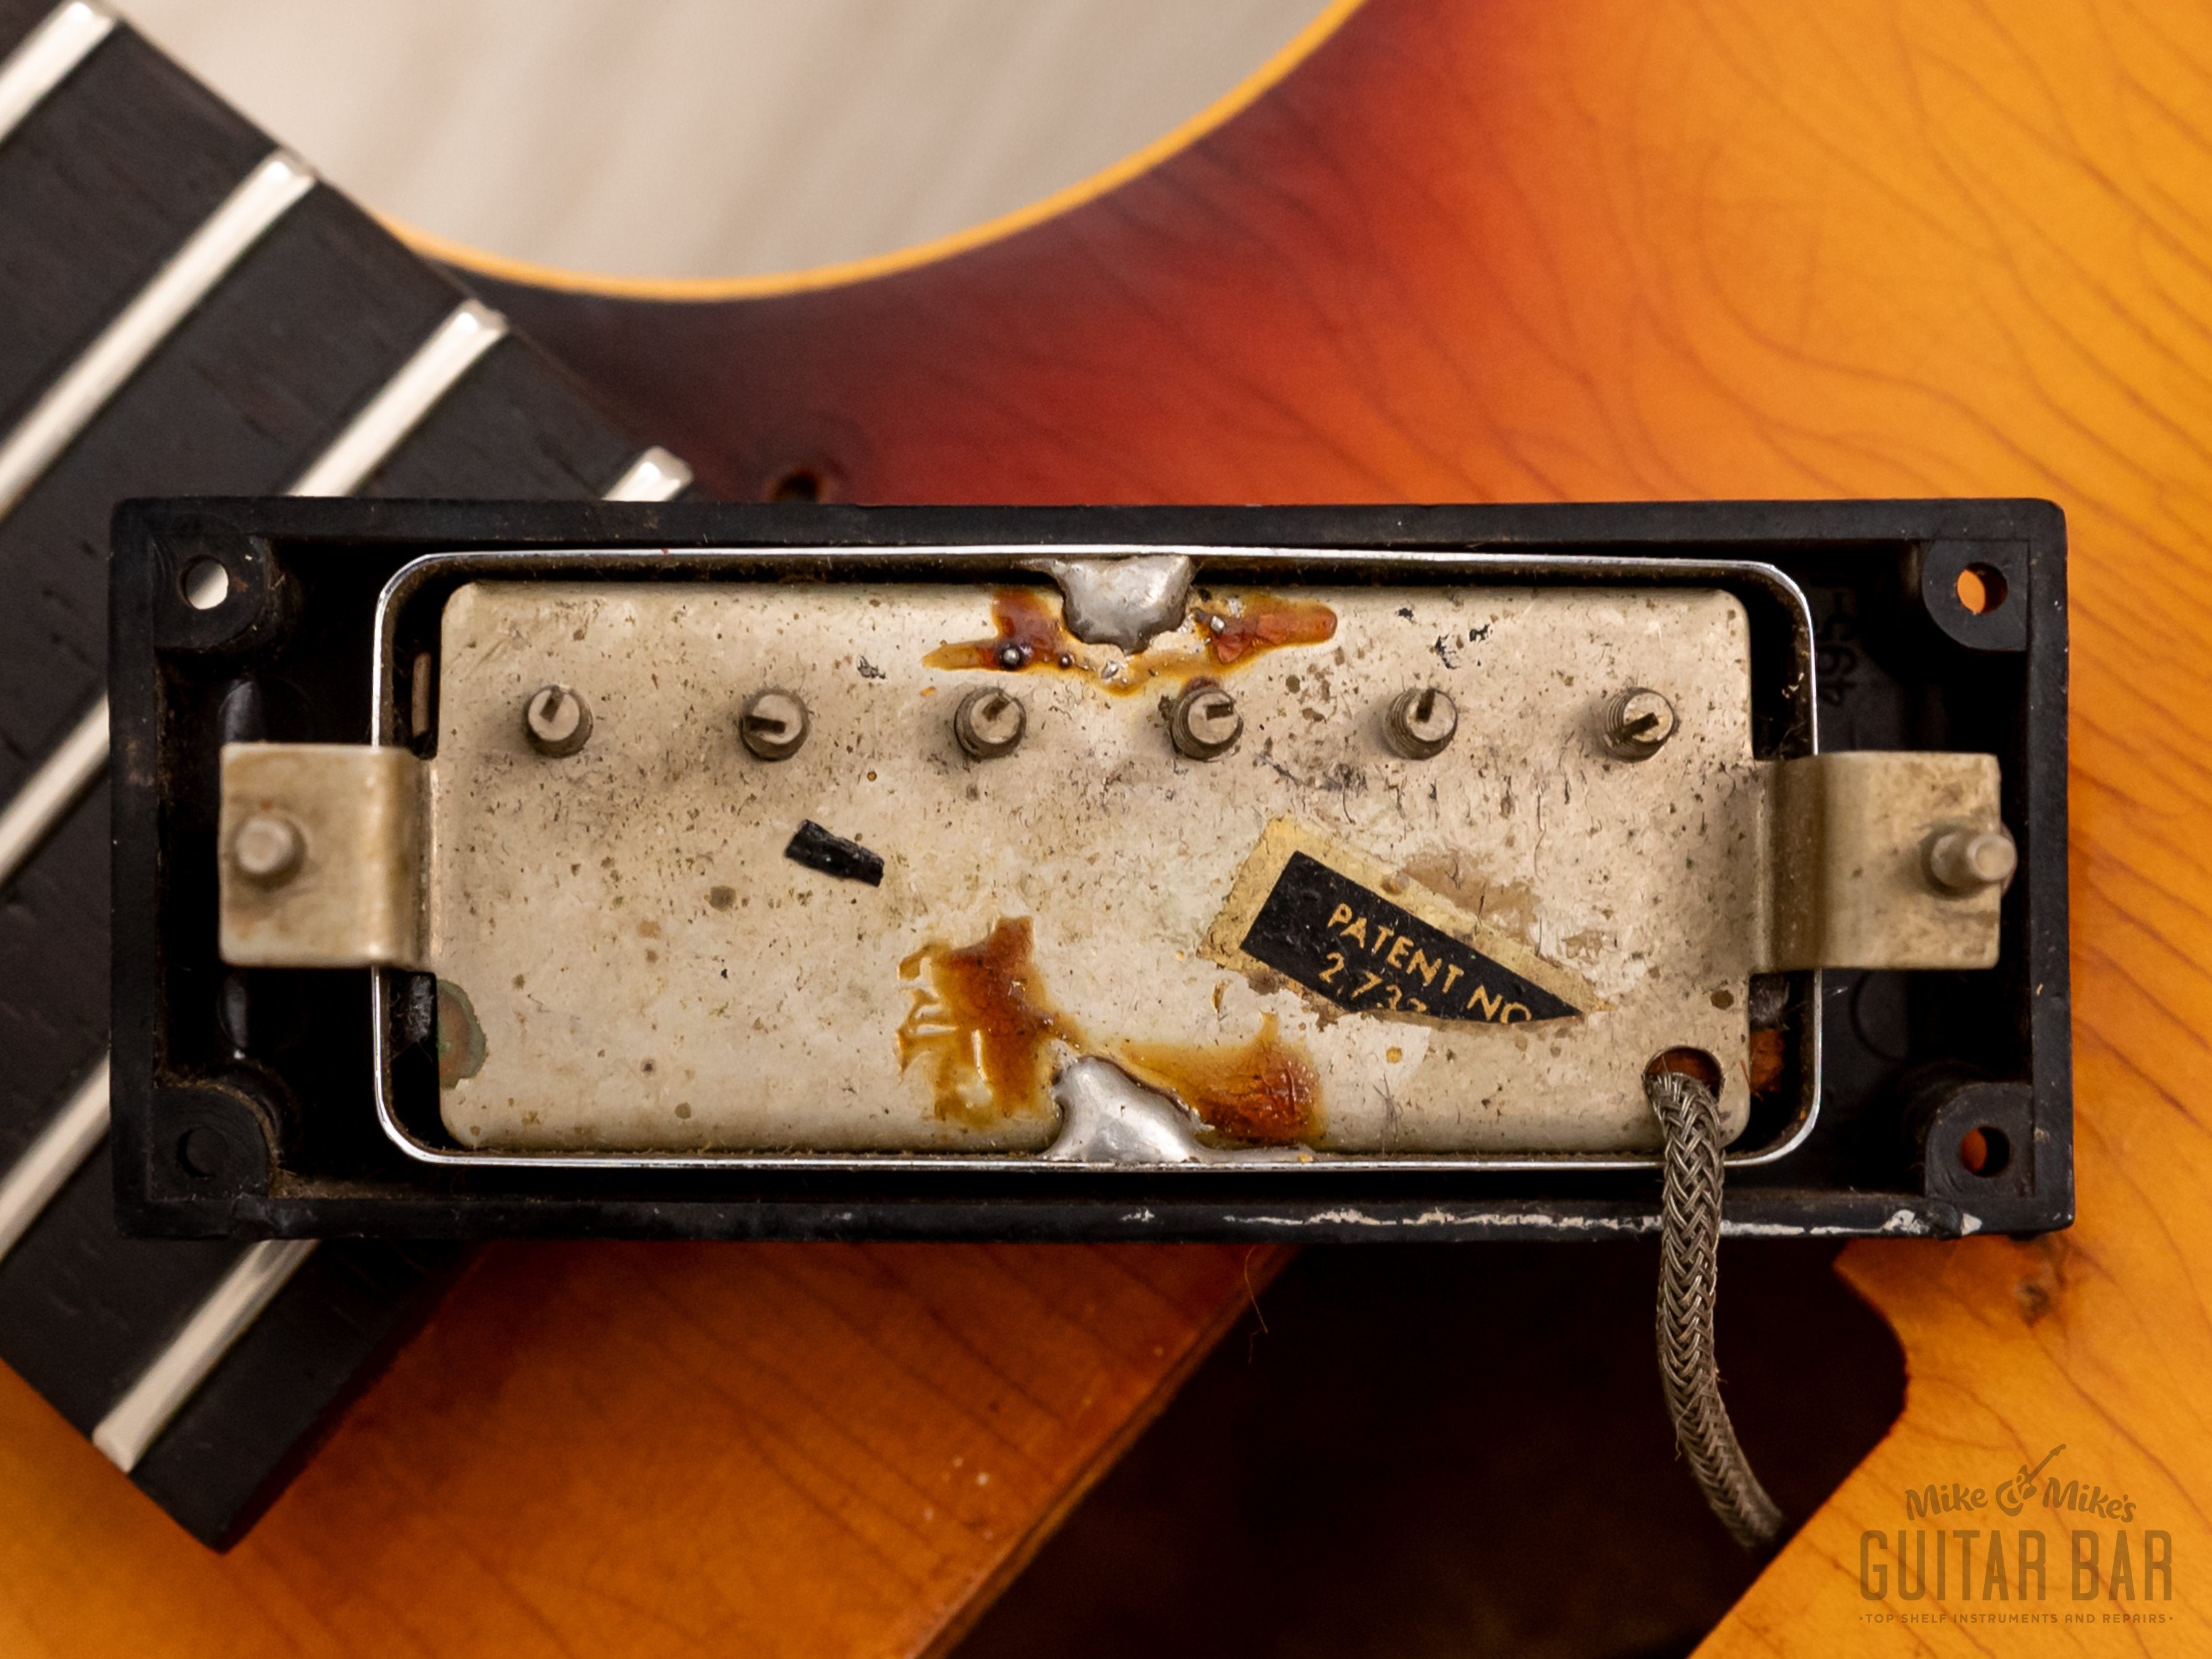 1965 Epiphone Sorrento E452TD Vintage Hollowbody Guitar Sunburst w/ Pat # Mini Humbuckers, Case